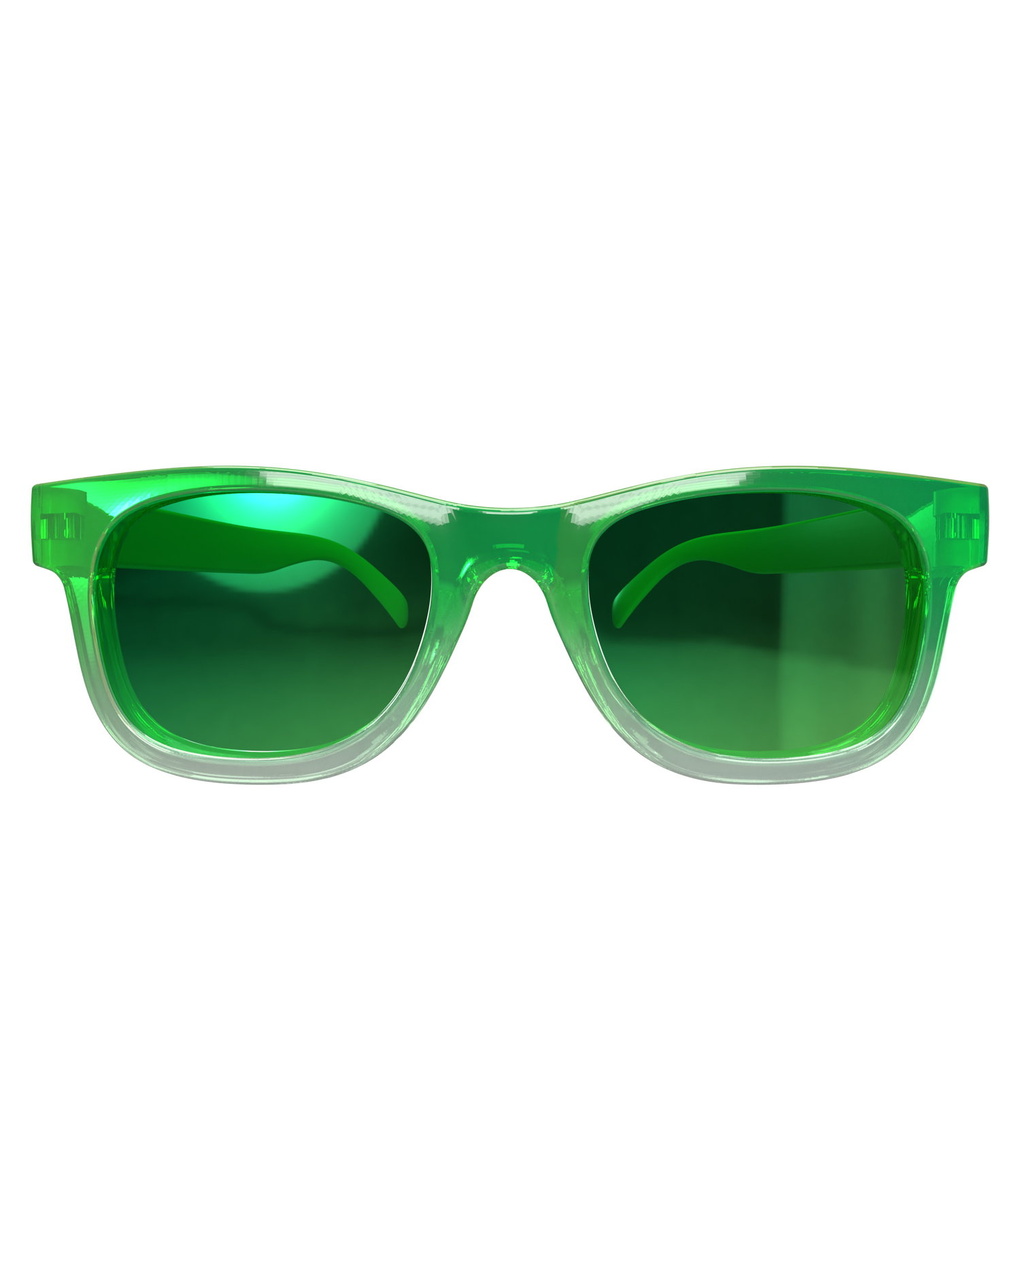 Occhiali sole trasparenti 24m+ verde - chicco - Chicco